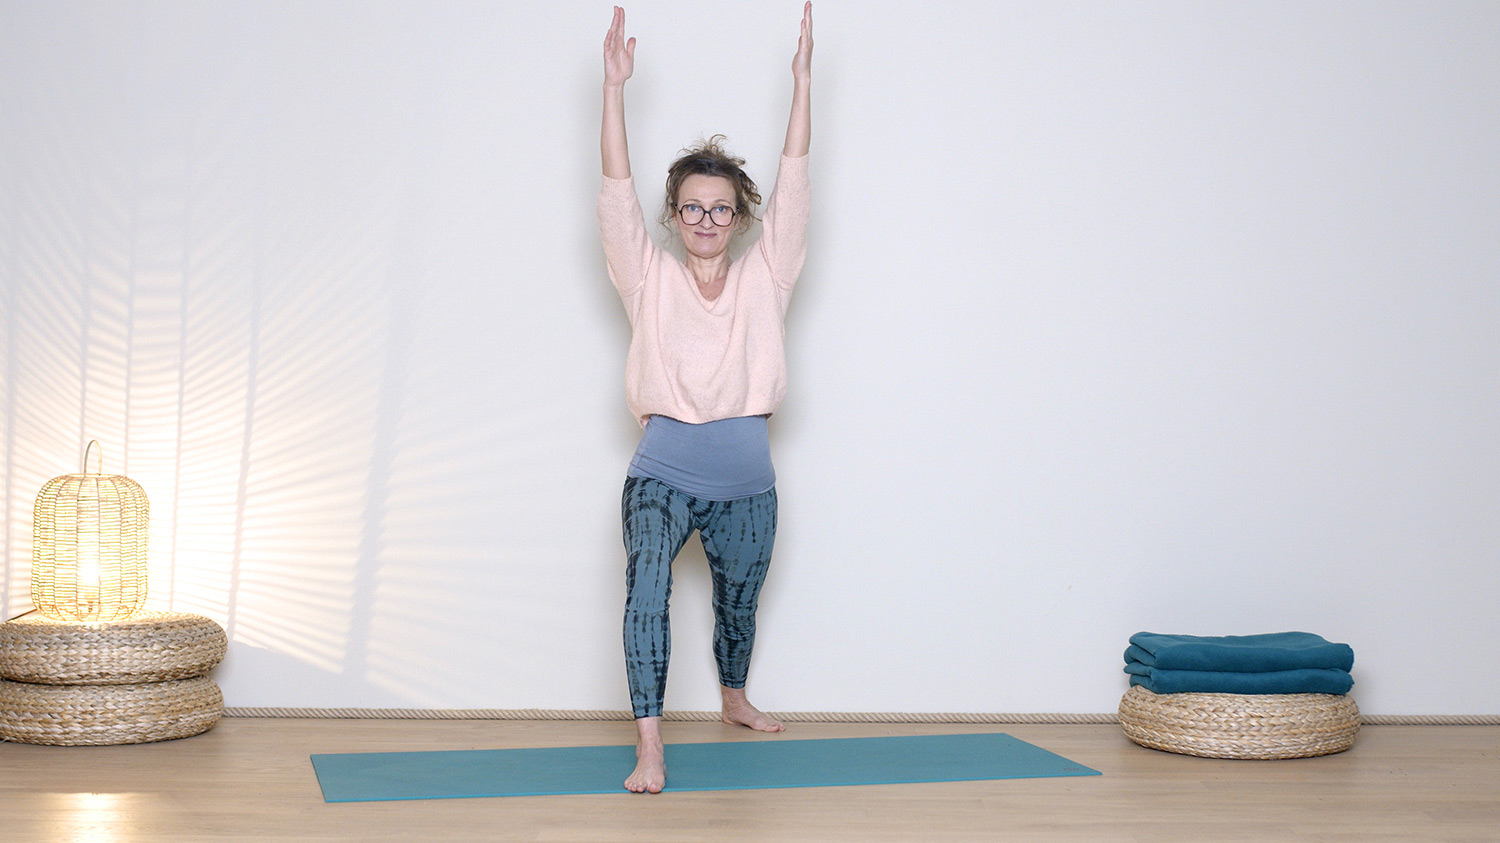 Yoga et Ayurvéda spécial Hiver 1/5 : Bouger contre la stagnation | Cours de yoga en ligne avec Delphine Denis | Ayurveda, Hatha Yoga dynamique